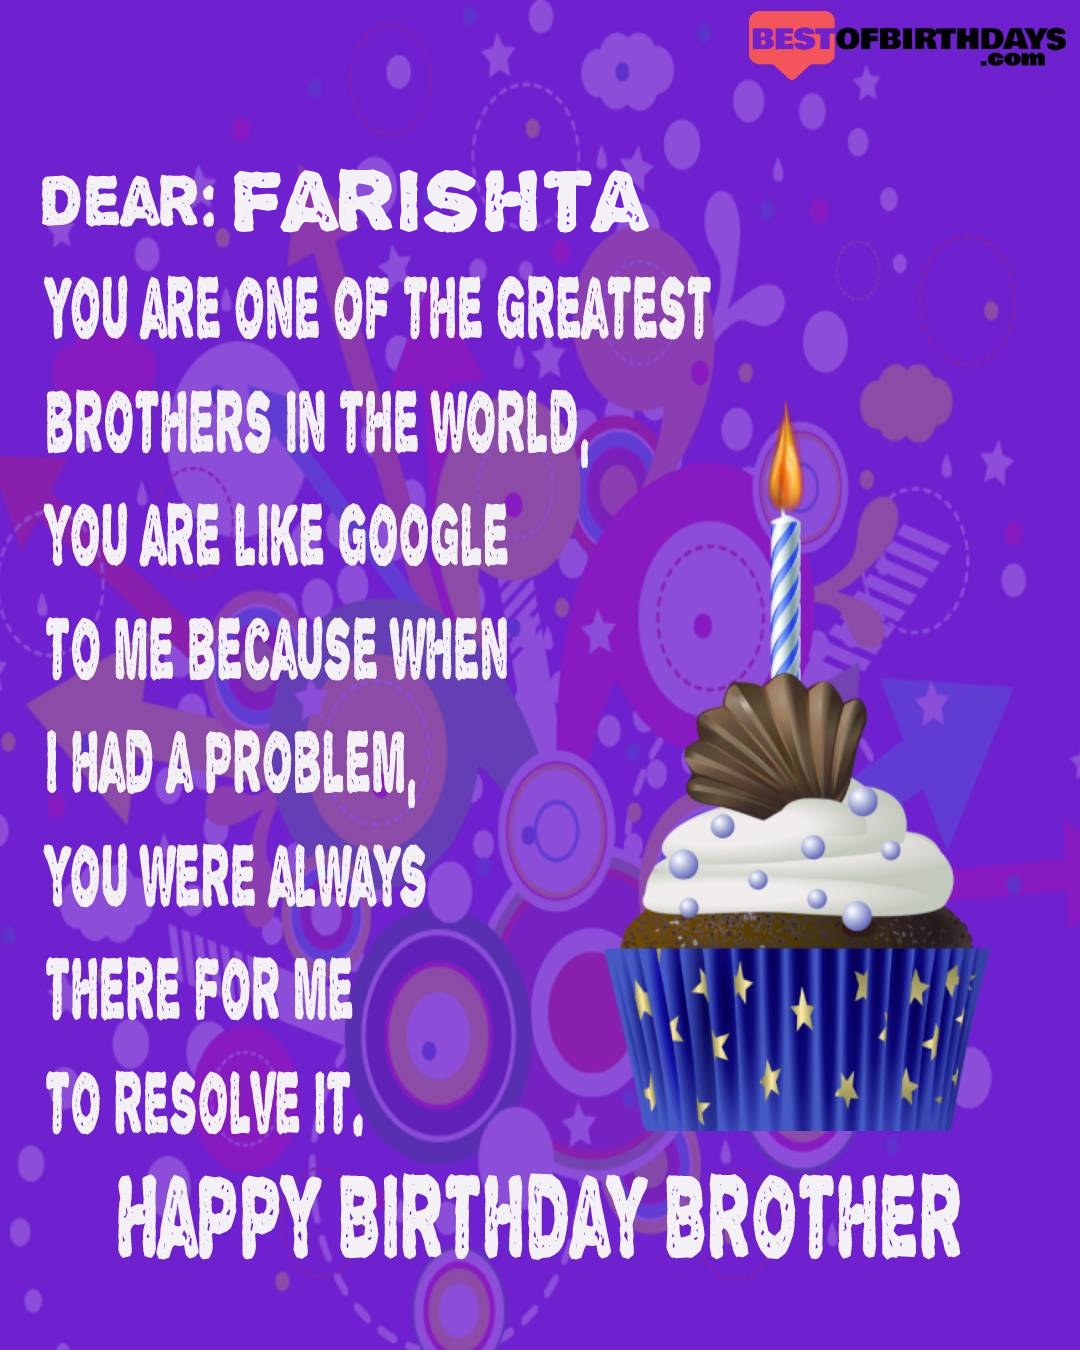 Happy birthday farishta bhai brother bro